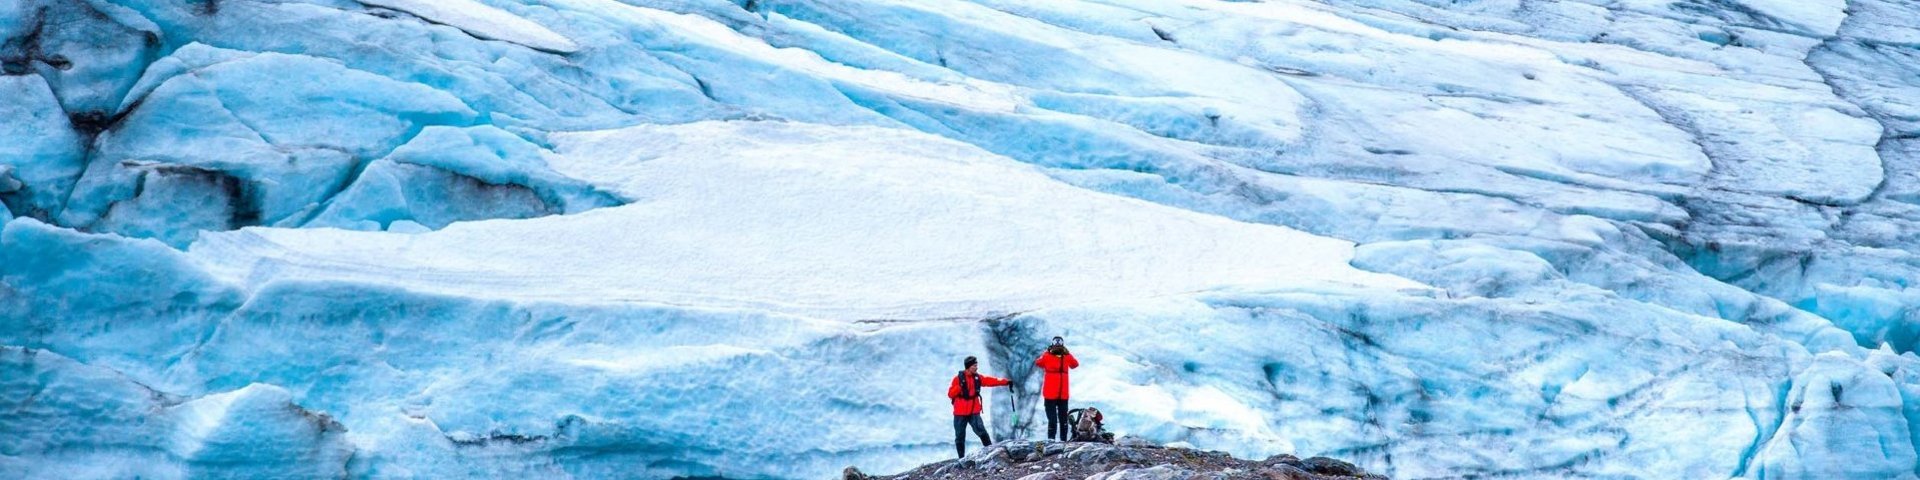 Gletscher mit Menschen im Vordergrund